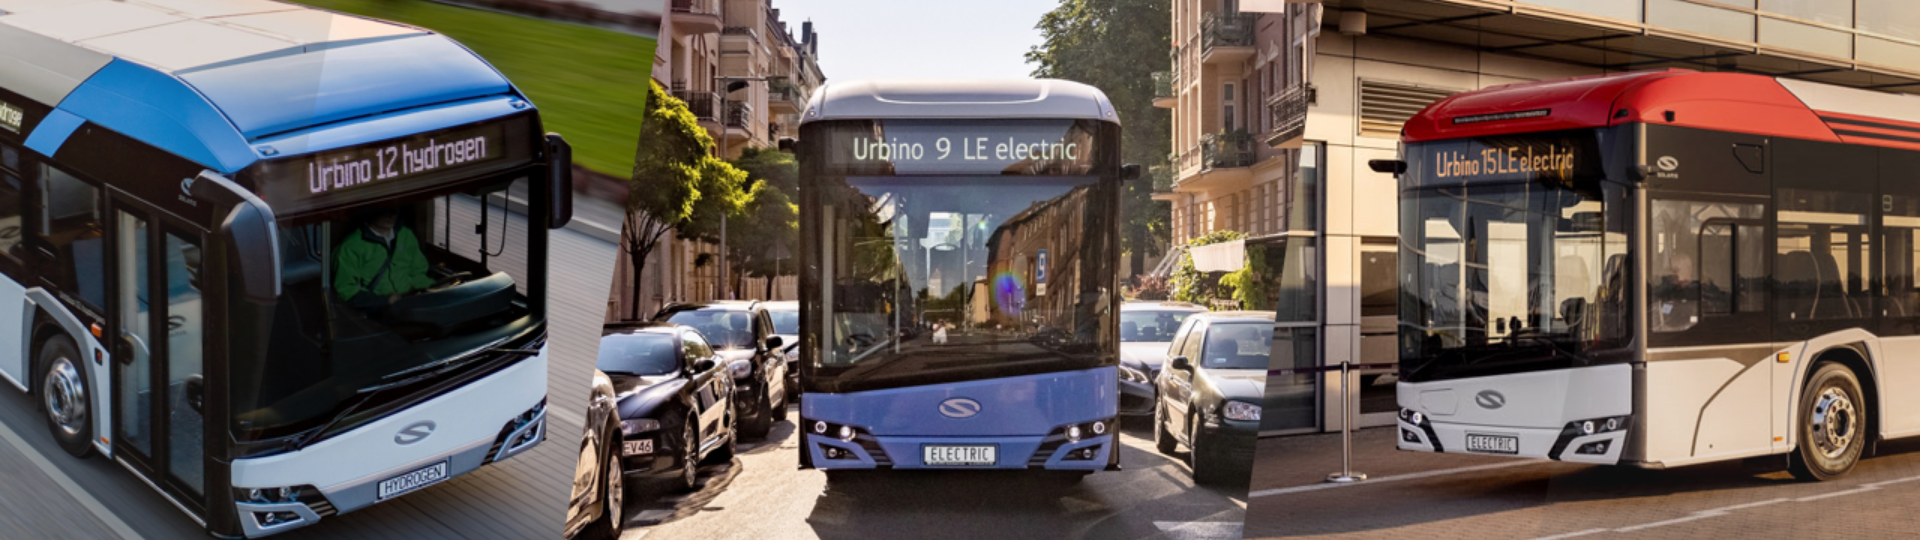 Transexpo Kielce 2021: Solaris stellt vier emissionsfreie Busse vor